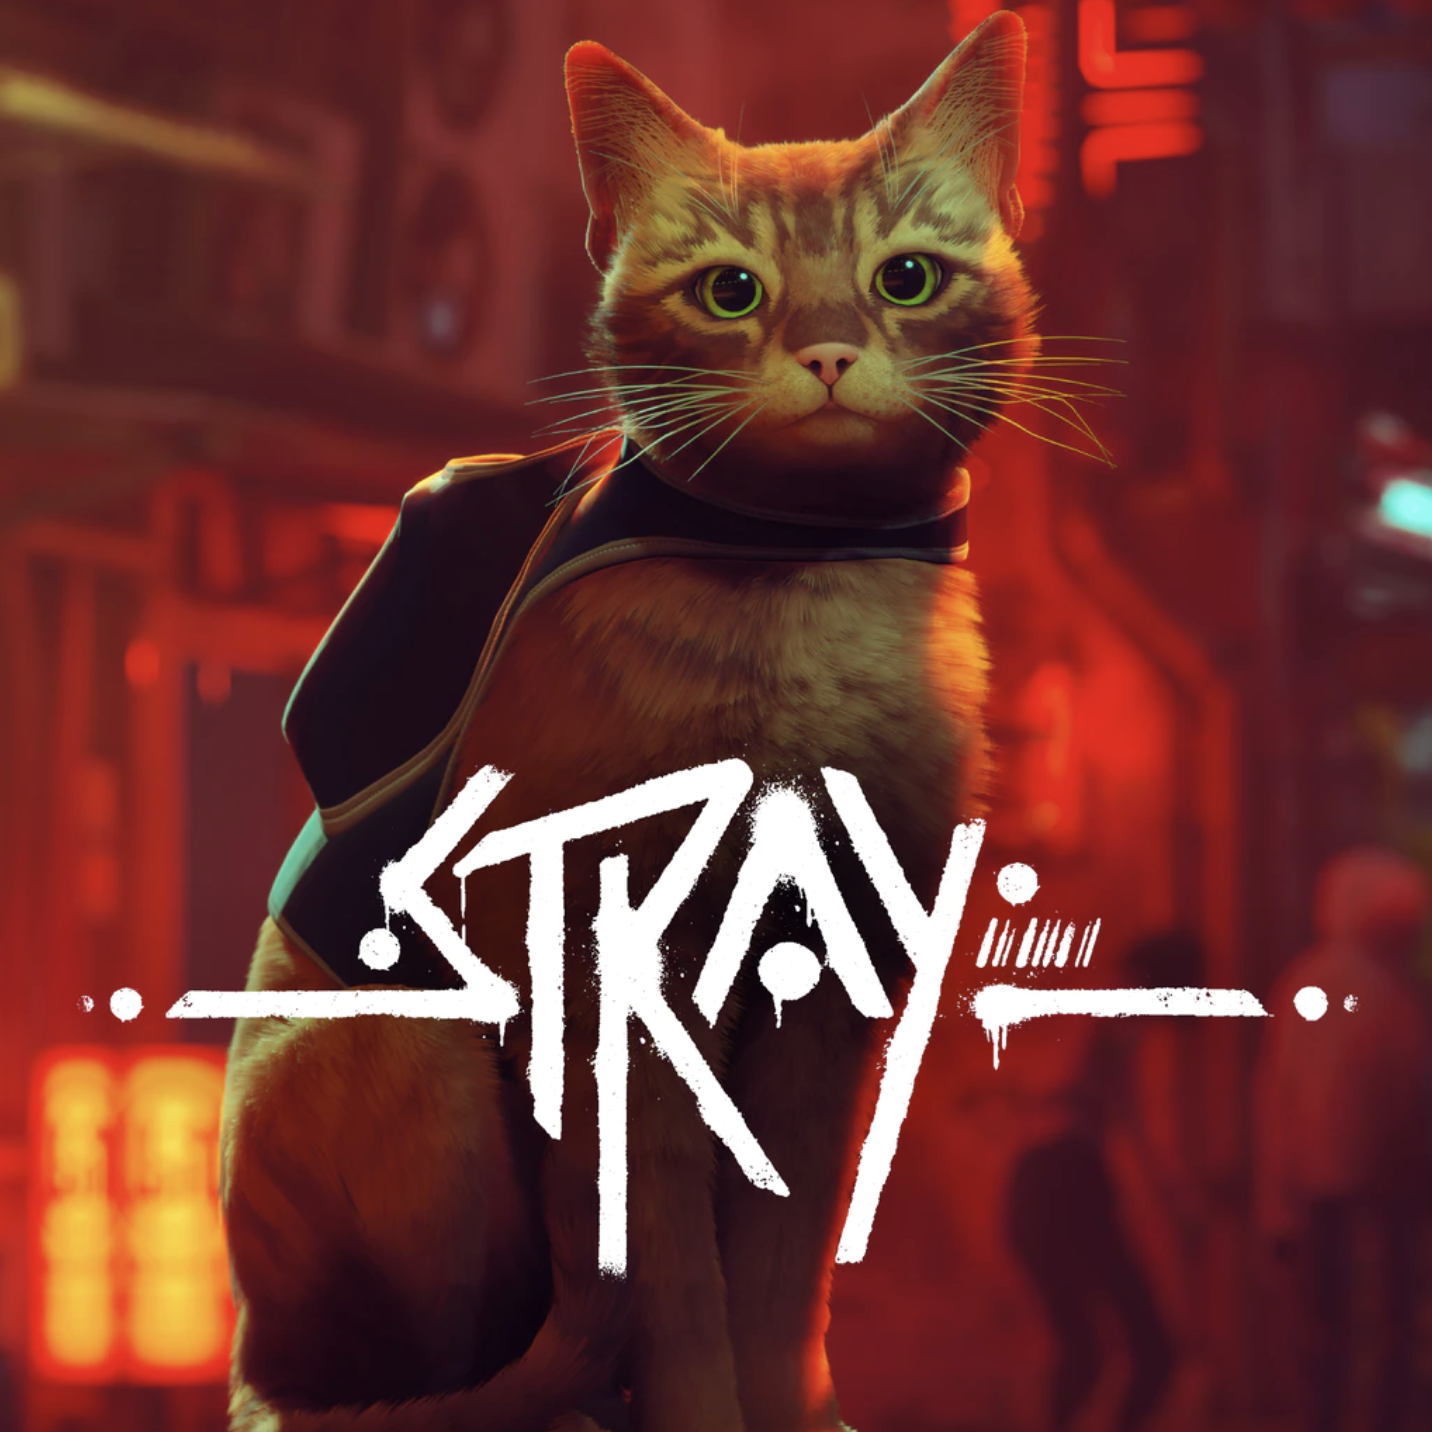 Stray - PS5 Games | PlayStation (US)